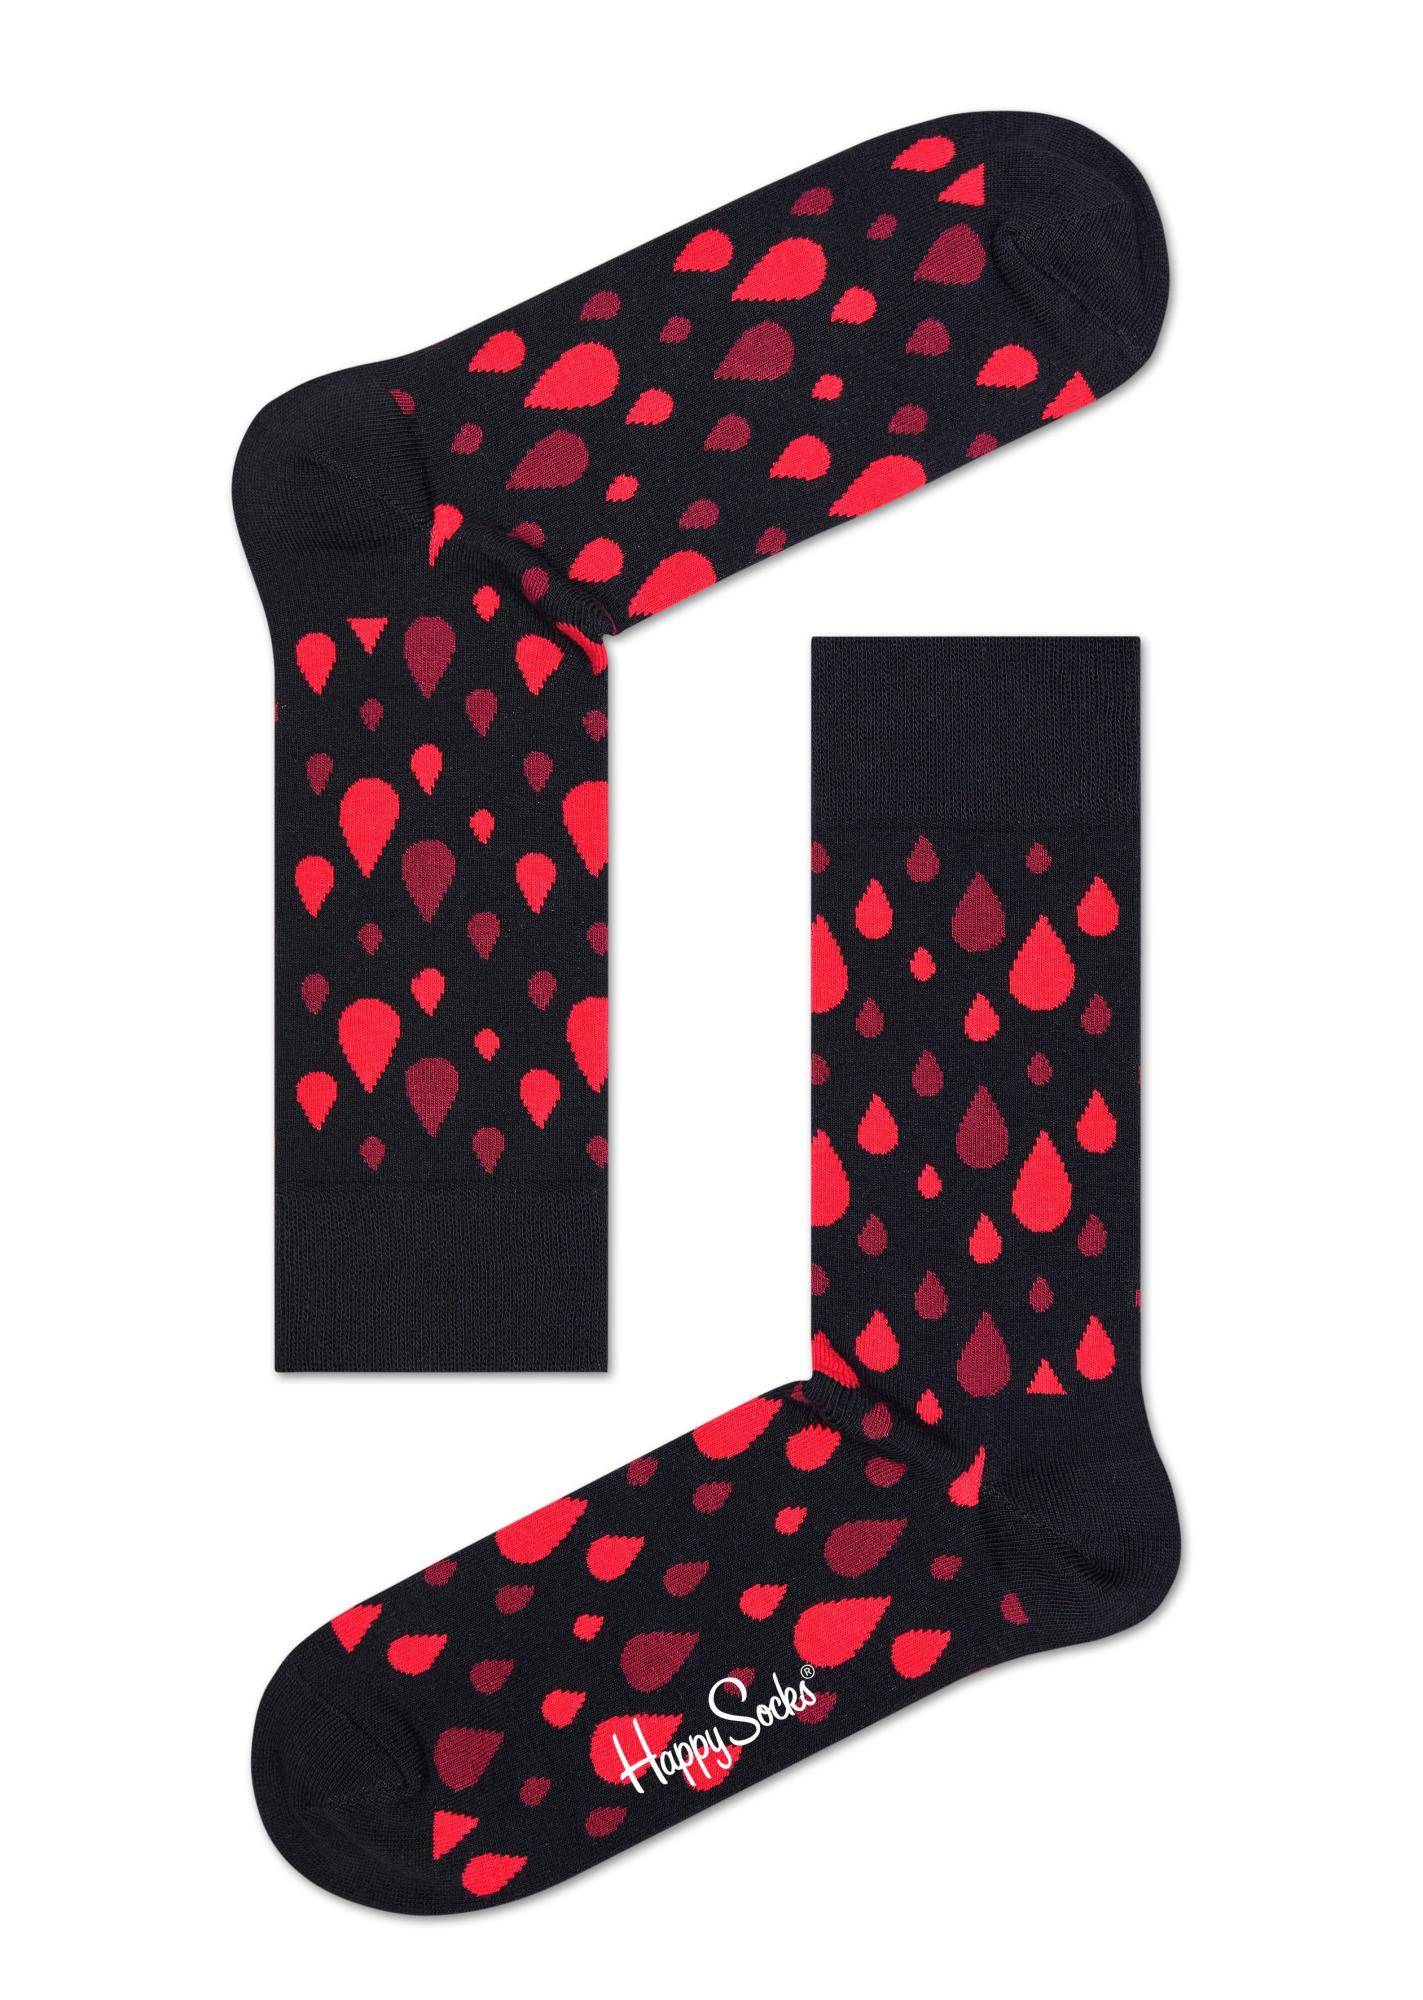 Носки Happy socks Robert Rodriguez Sock RRDB01 9000, размер 29